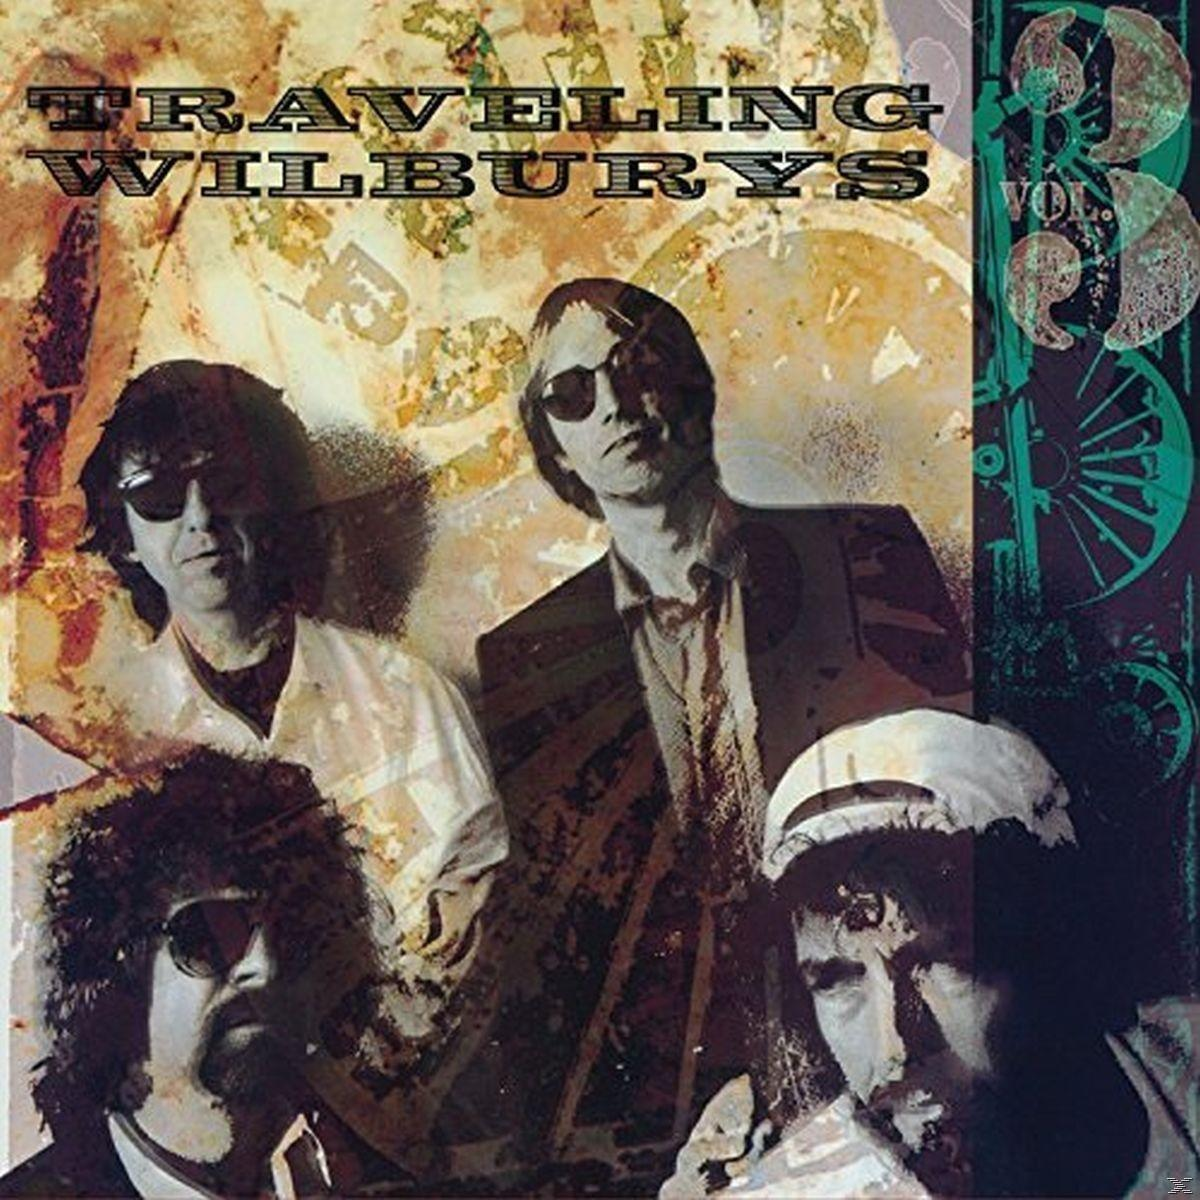 VARIOUS, Traveling (CD) Traveling The - Wilburys - Wilburys,Vol.3